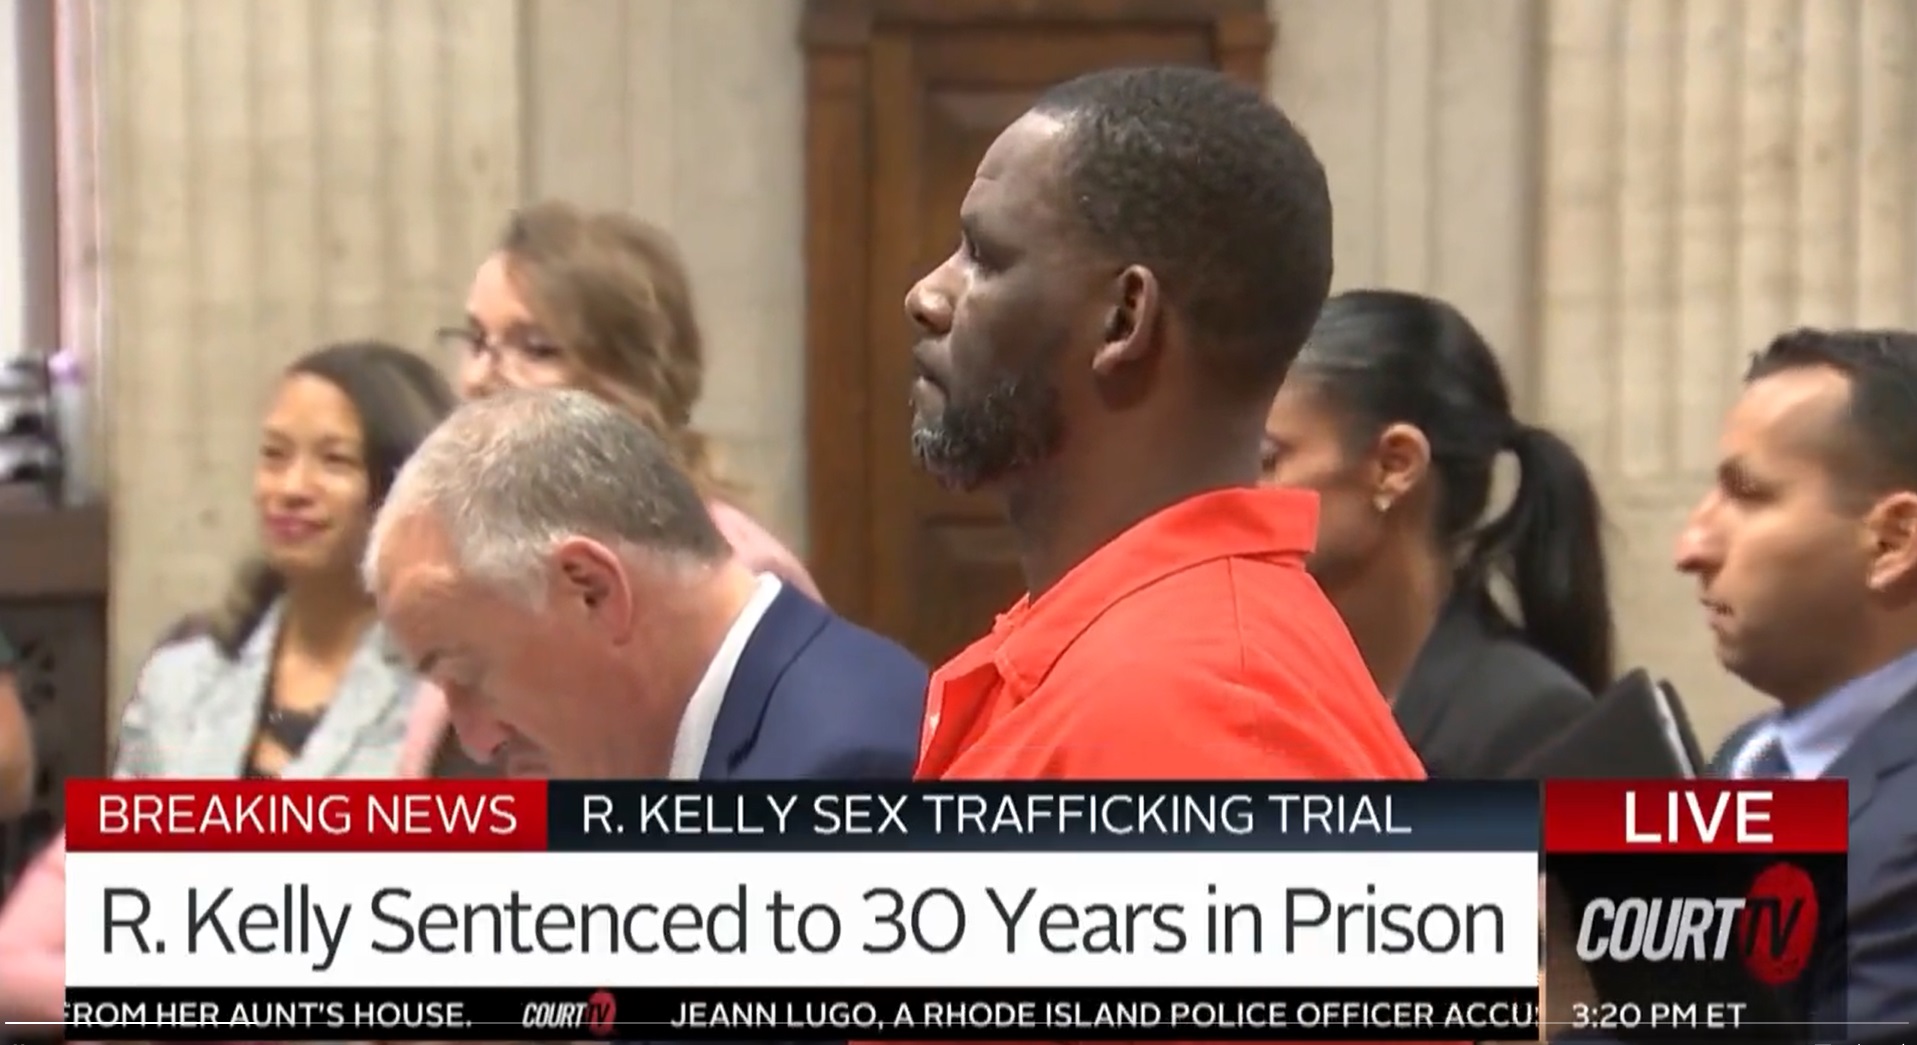 米歌手R. ケリー被告に禁固30年の判決　女性への性犯罪で求刑を上回る量刑　
